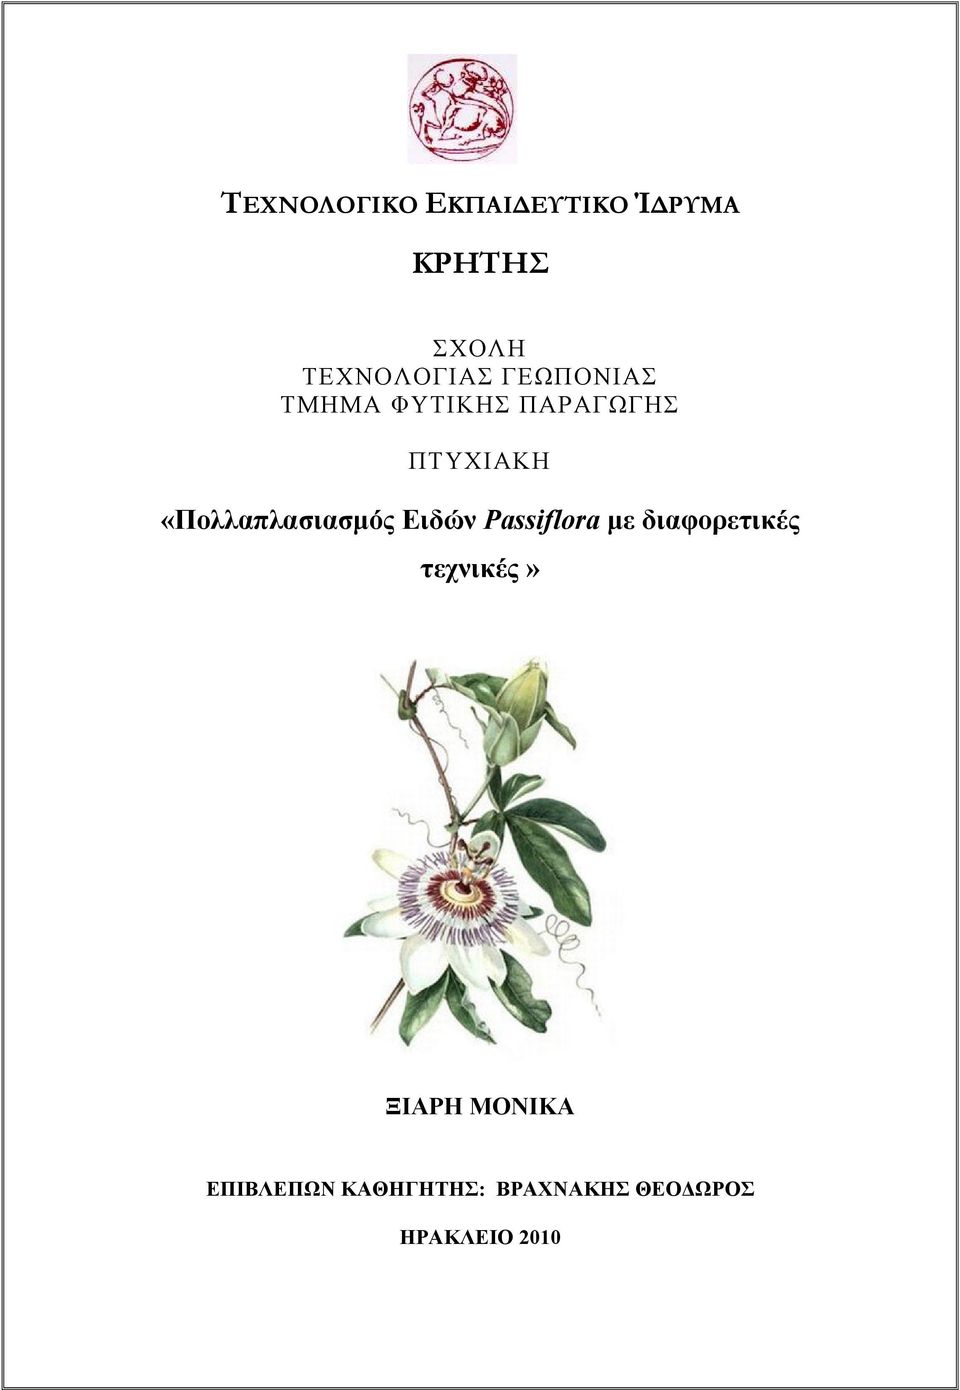 «Πολλαπλασιασμός Ειδών Passiflora με διαφορετικές